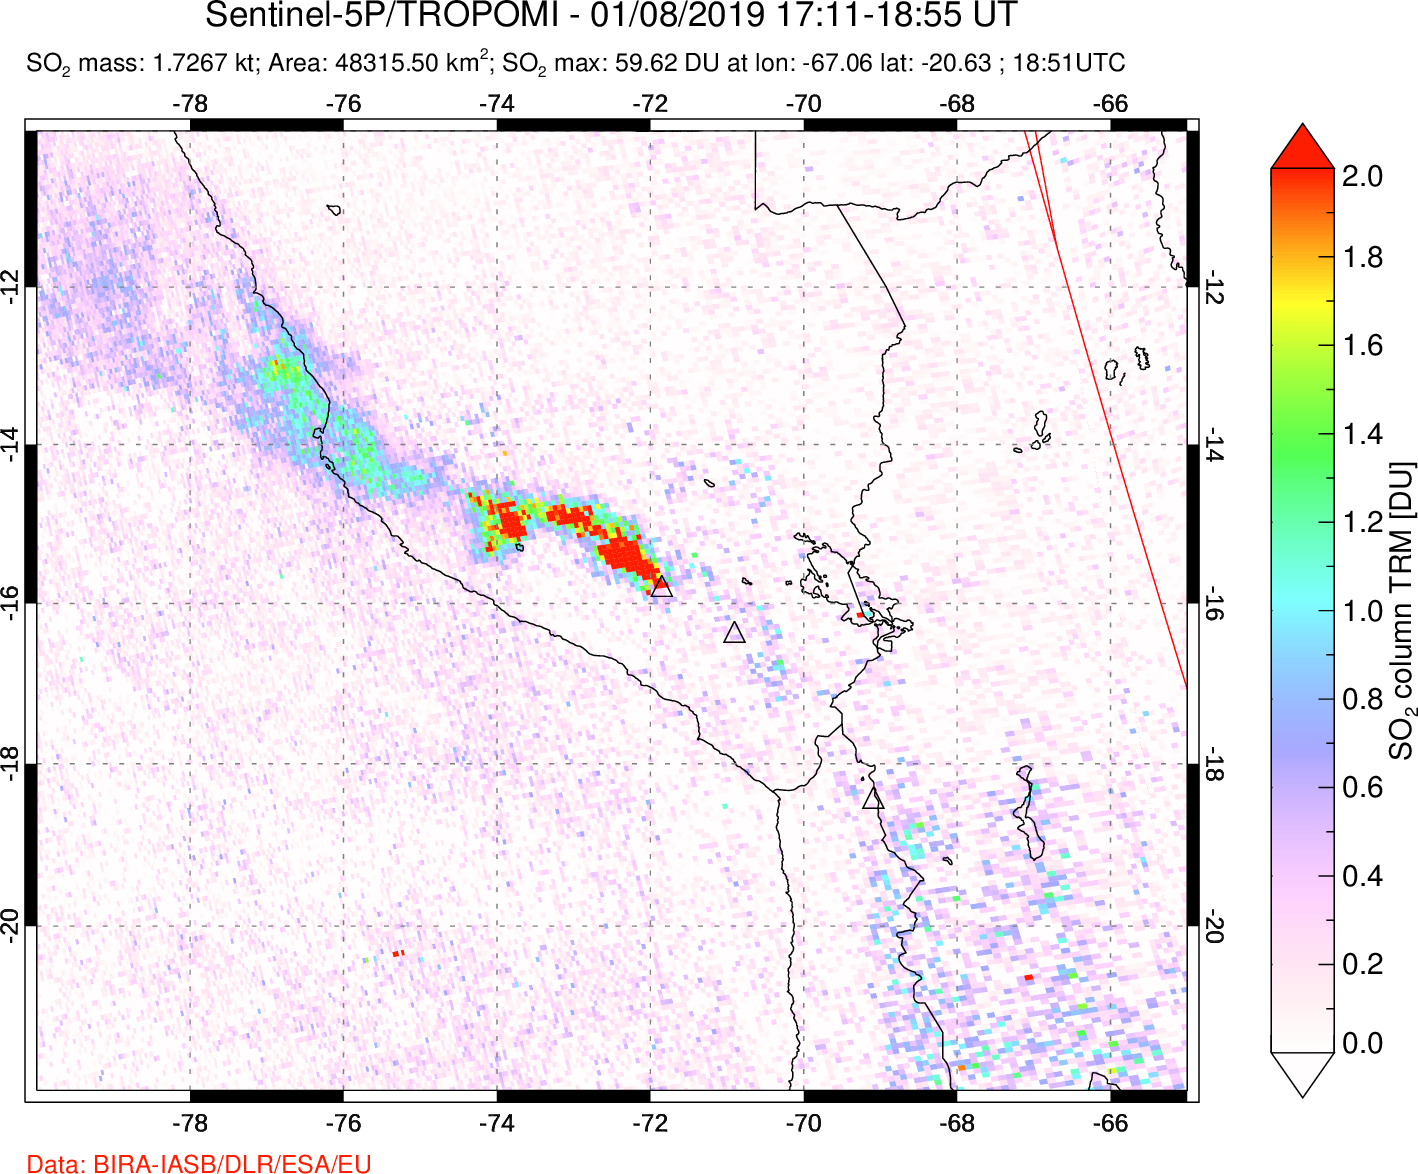 A sulfur dioxide image over Peru on Jan 08, 2019.